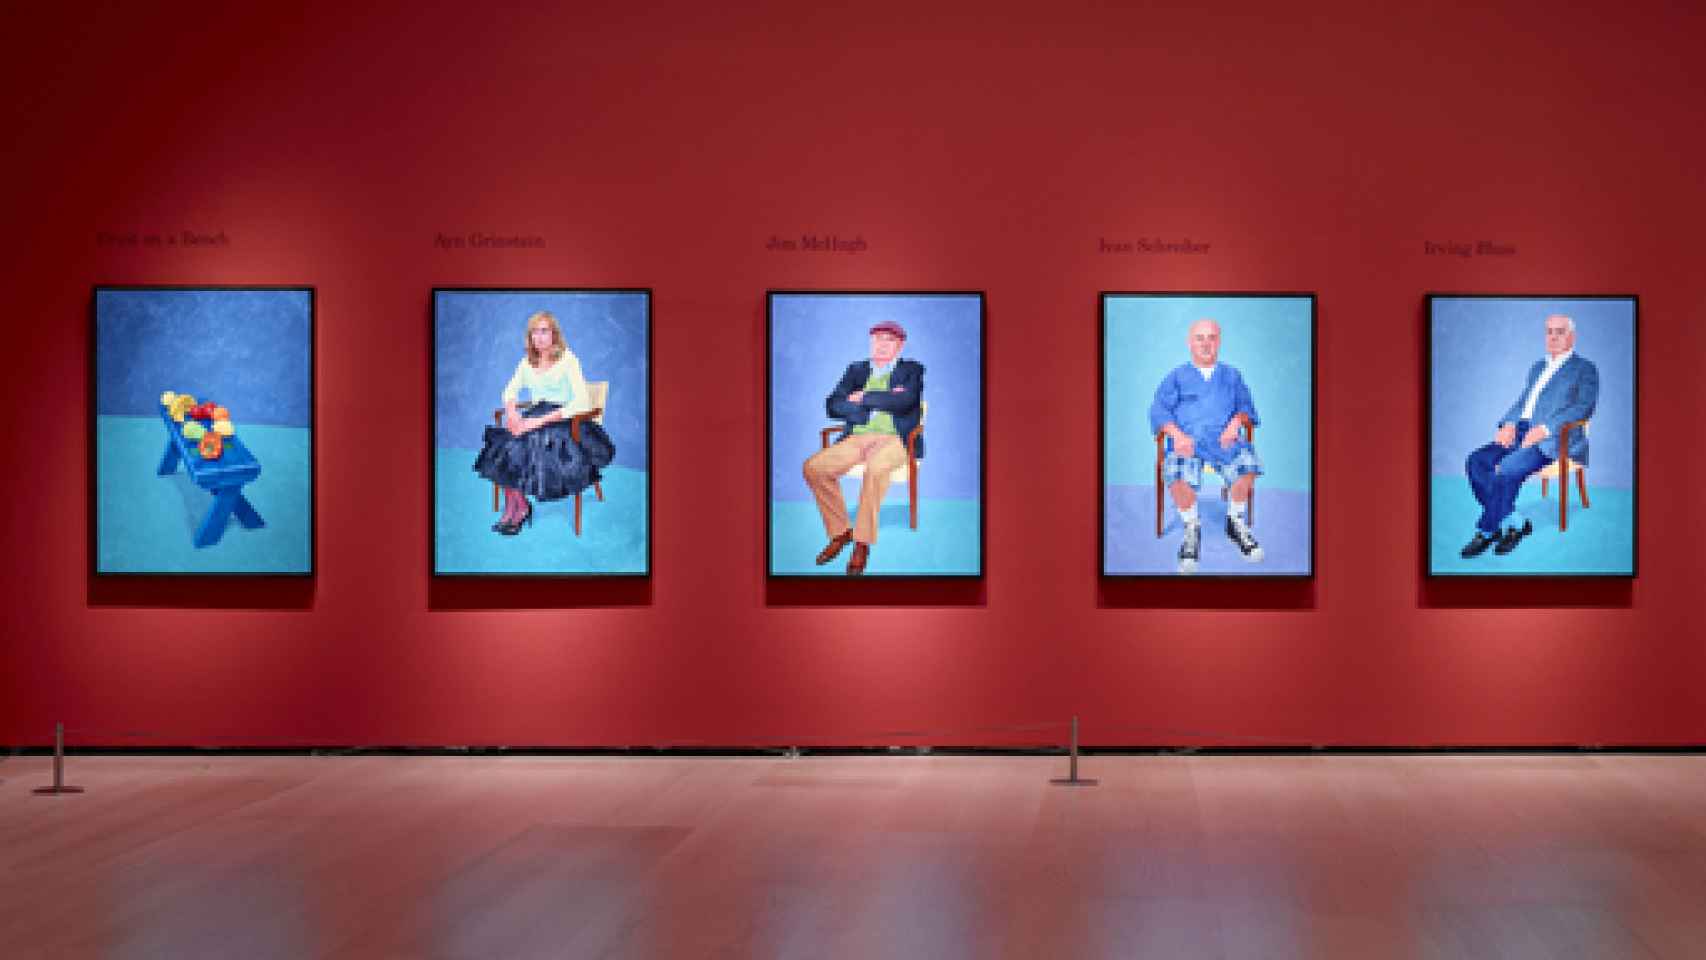 Image: Hockney se salta las normas